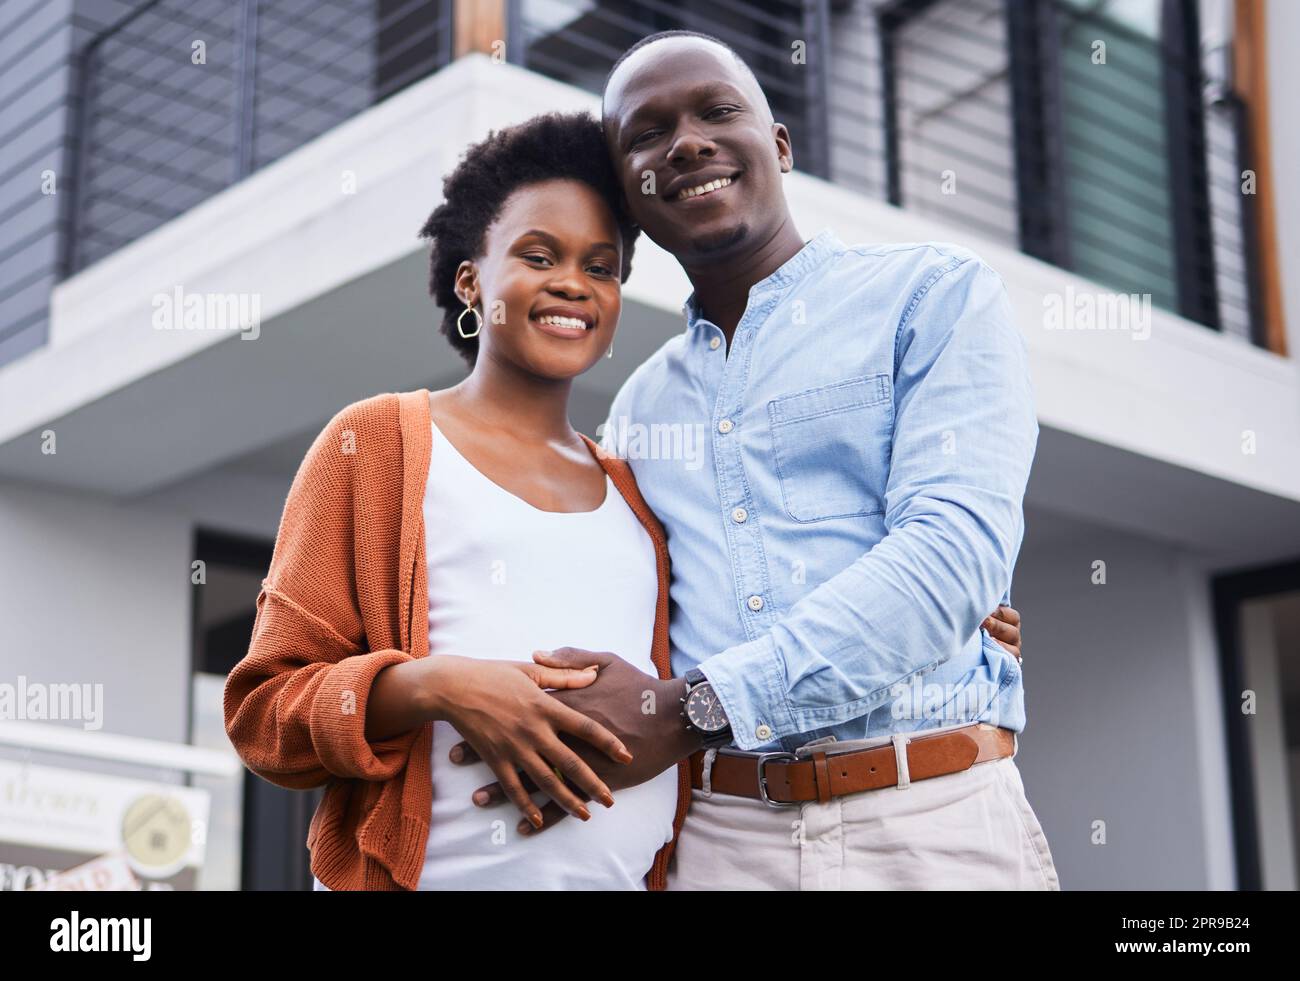 Elternschaft an unserem neuen Ort beginnen. Porträt eines jungen Paares, das vor ihrem neuen Zuhause steht. Stockfoto